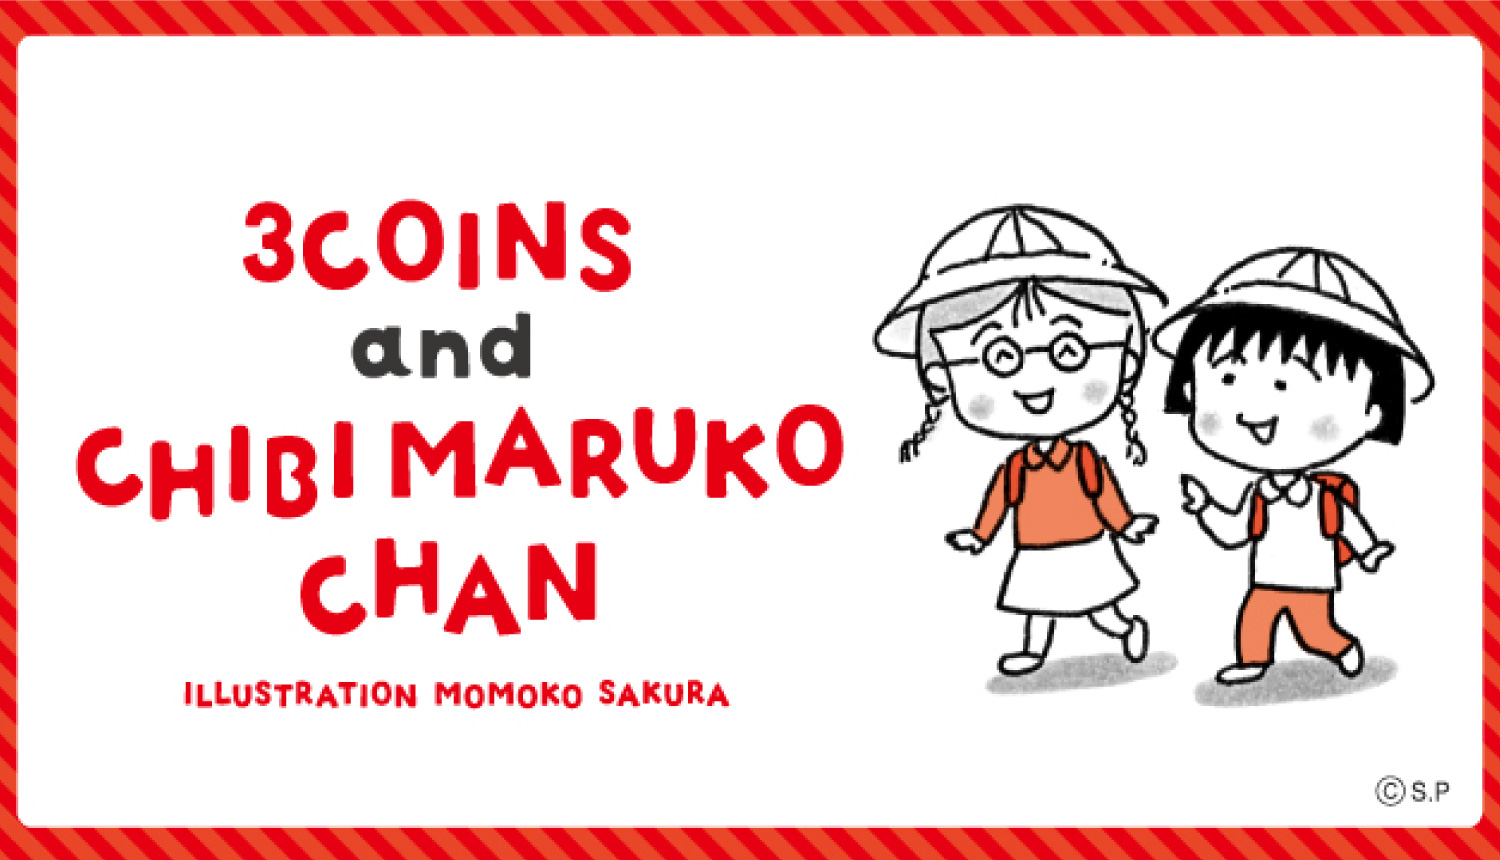 ちびまる子ちゃん-3COINS-Chibi-Maruko-Chan-3-COINS-Collection-櫻桃小丸子